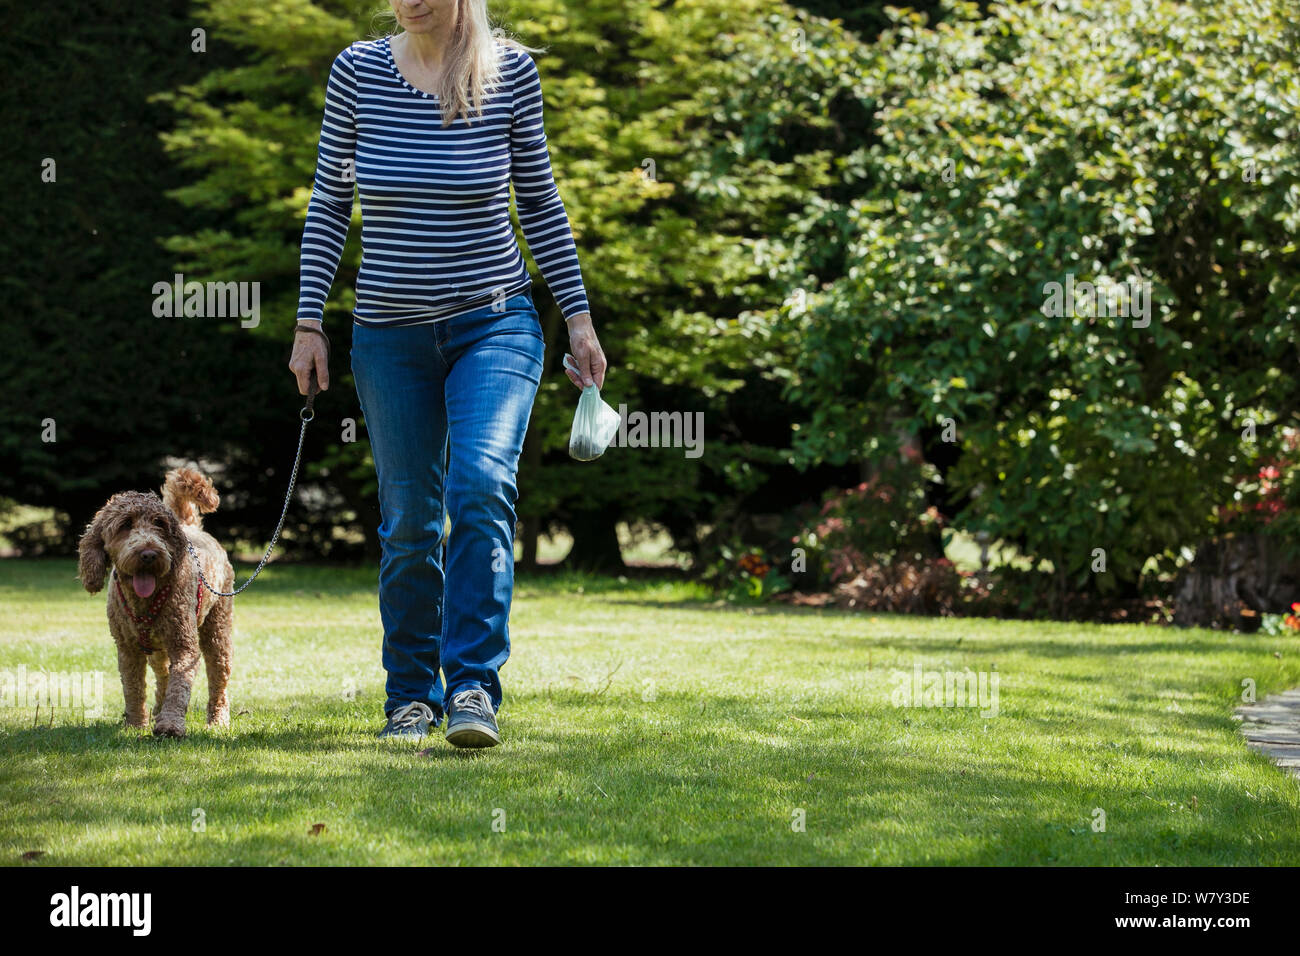 Una persona con un irreconocible poo bolsa como ella lleva a su perro a caminar en un parque público. Foto de stock